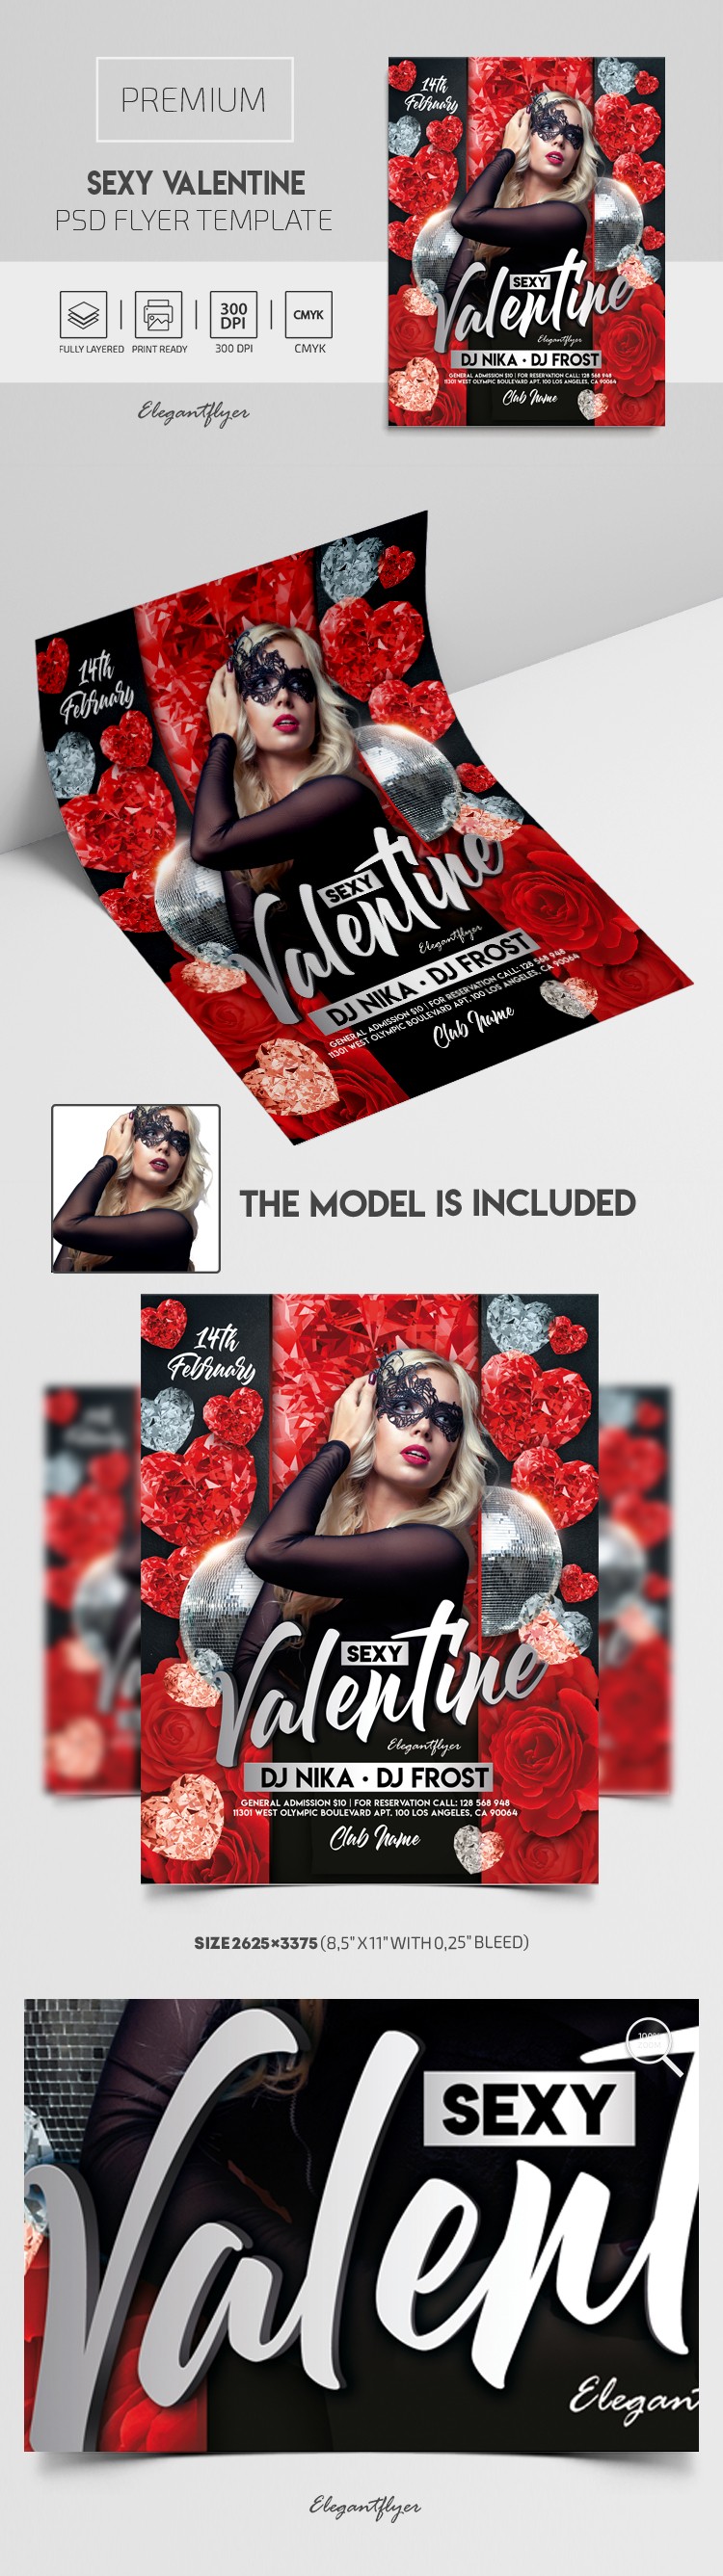 Sexy Valentine Flyer by ElegantFlyer